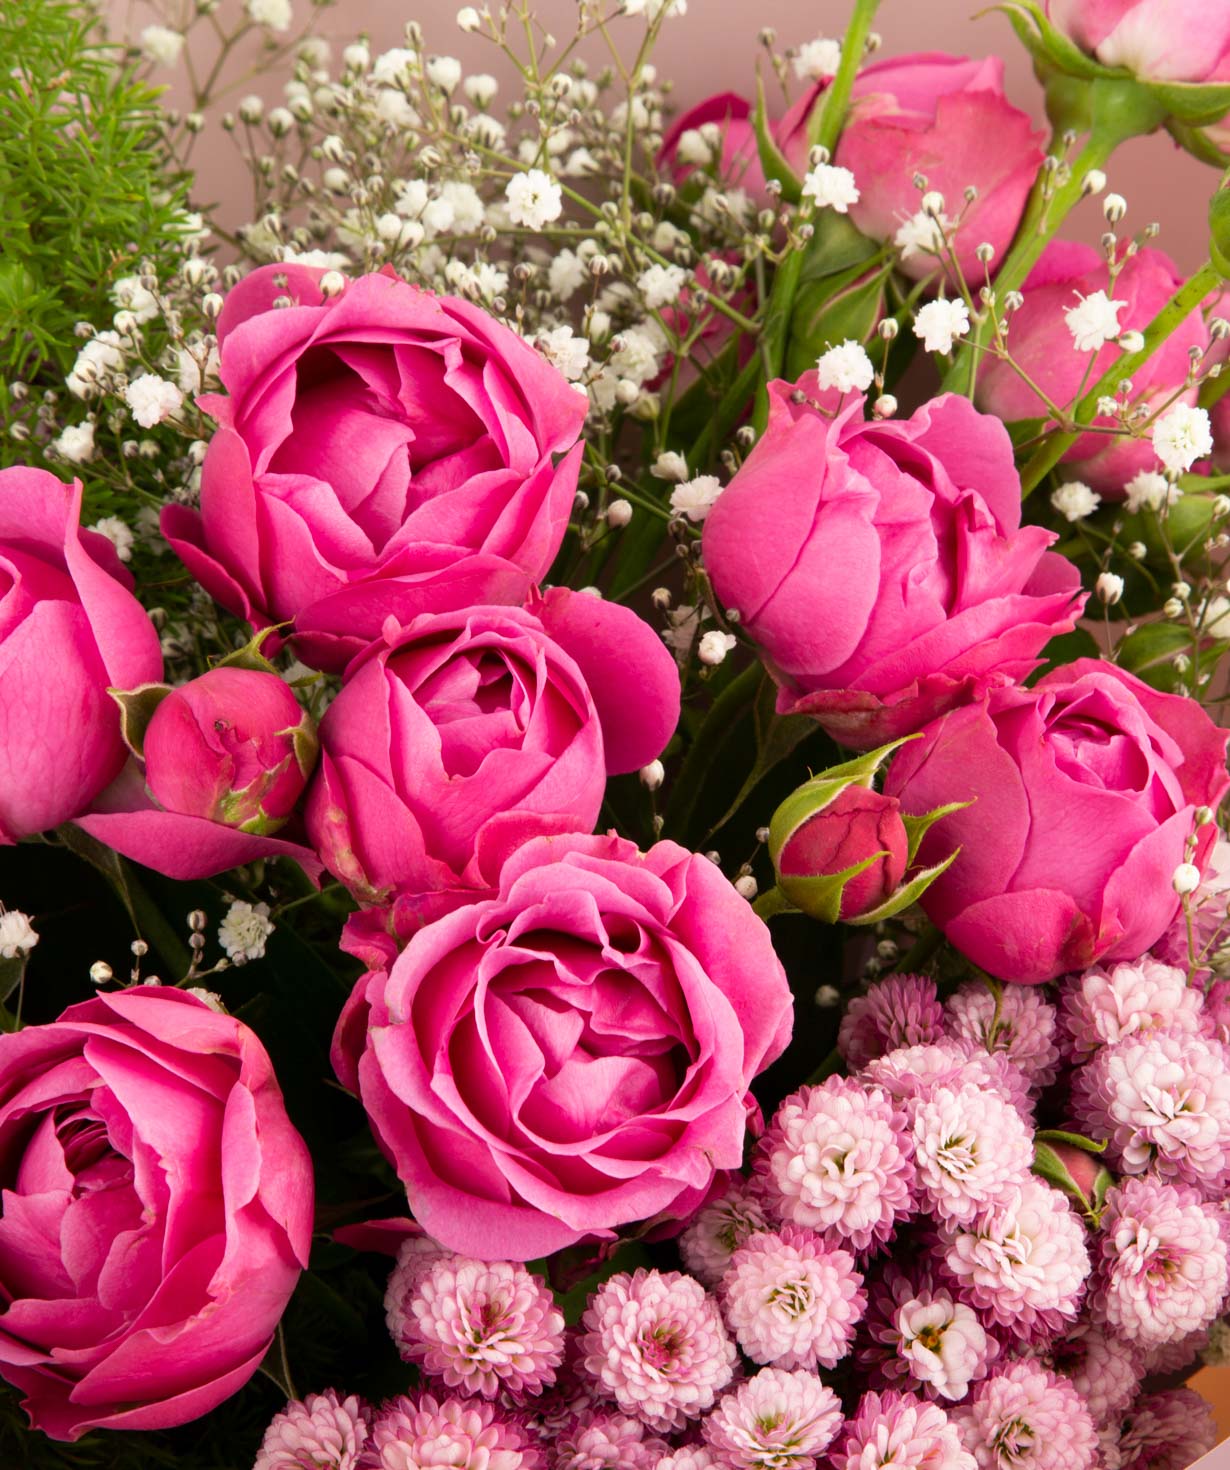 Ծաղկեփունջ «Սալերնո» վարդերով և քրիզանթեմներով